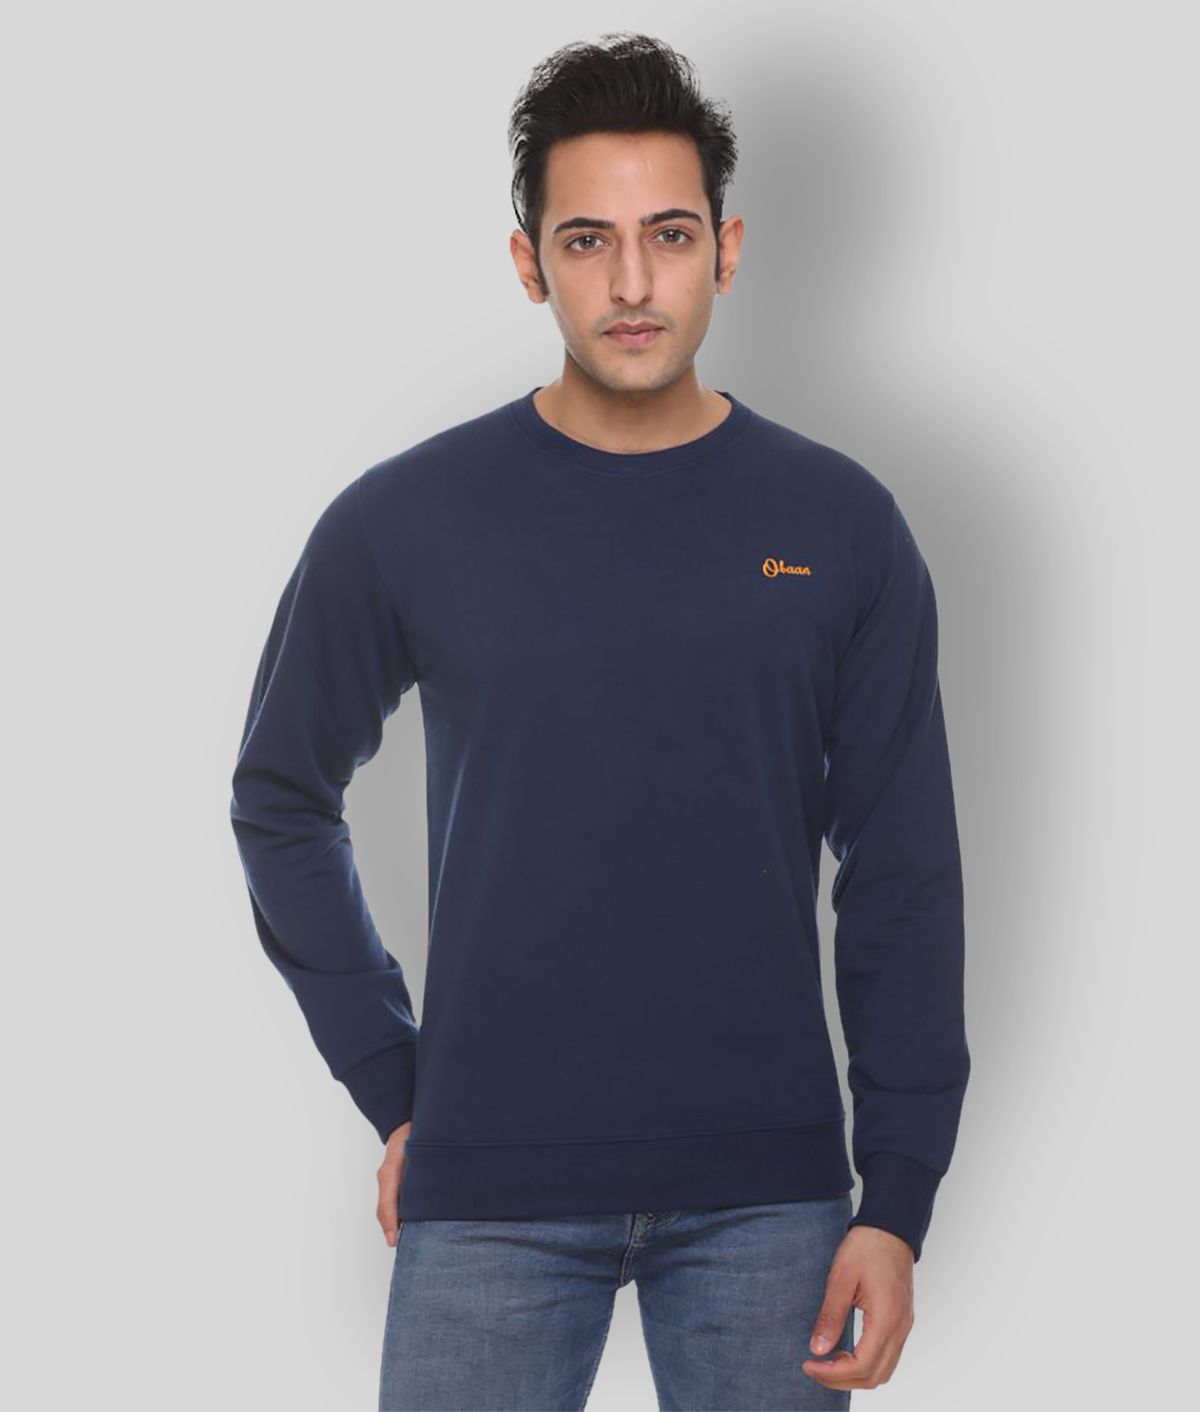     			OBAAN Blue Sweatshirt Pack of 1